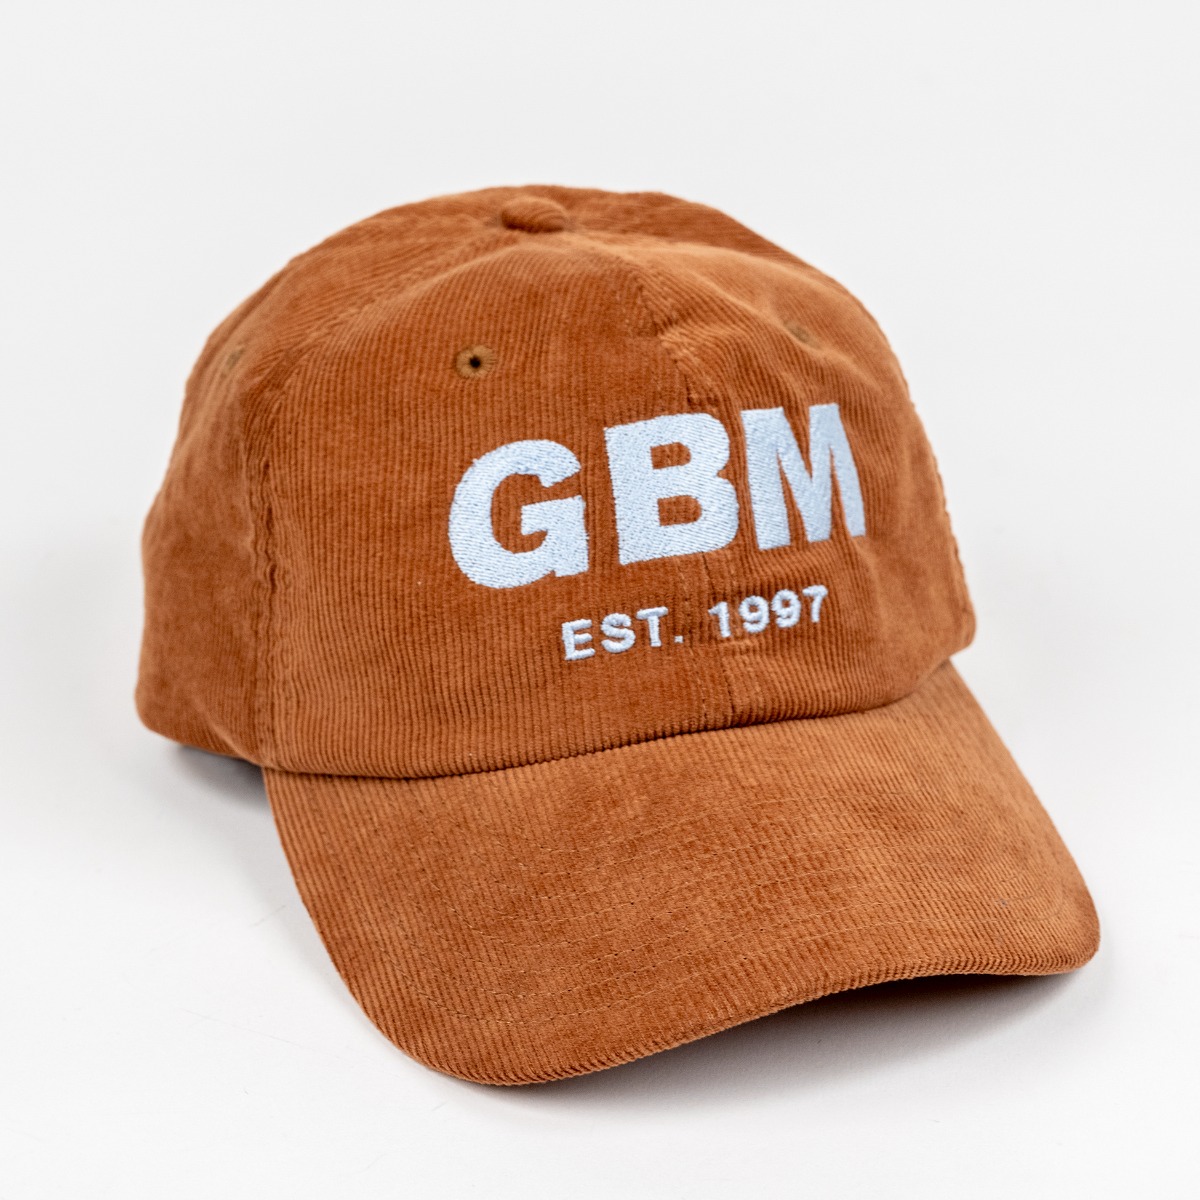  GBM corduroy cap